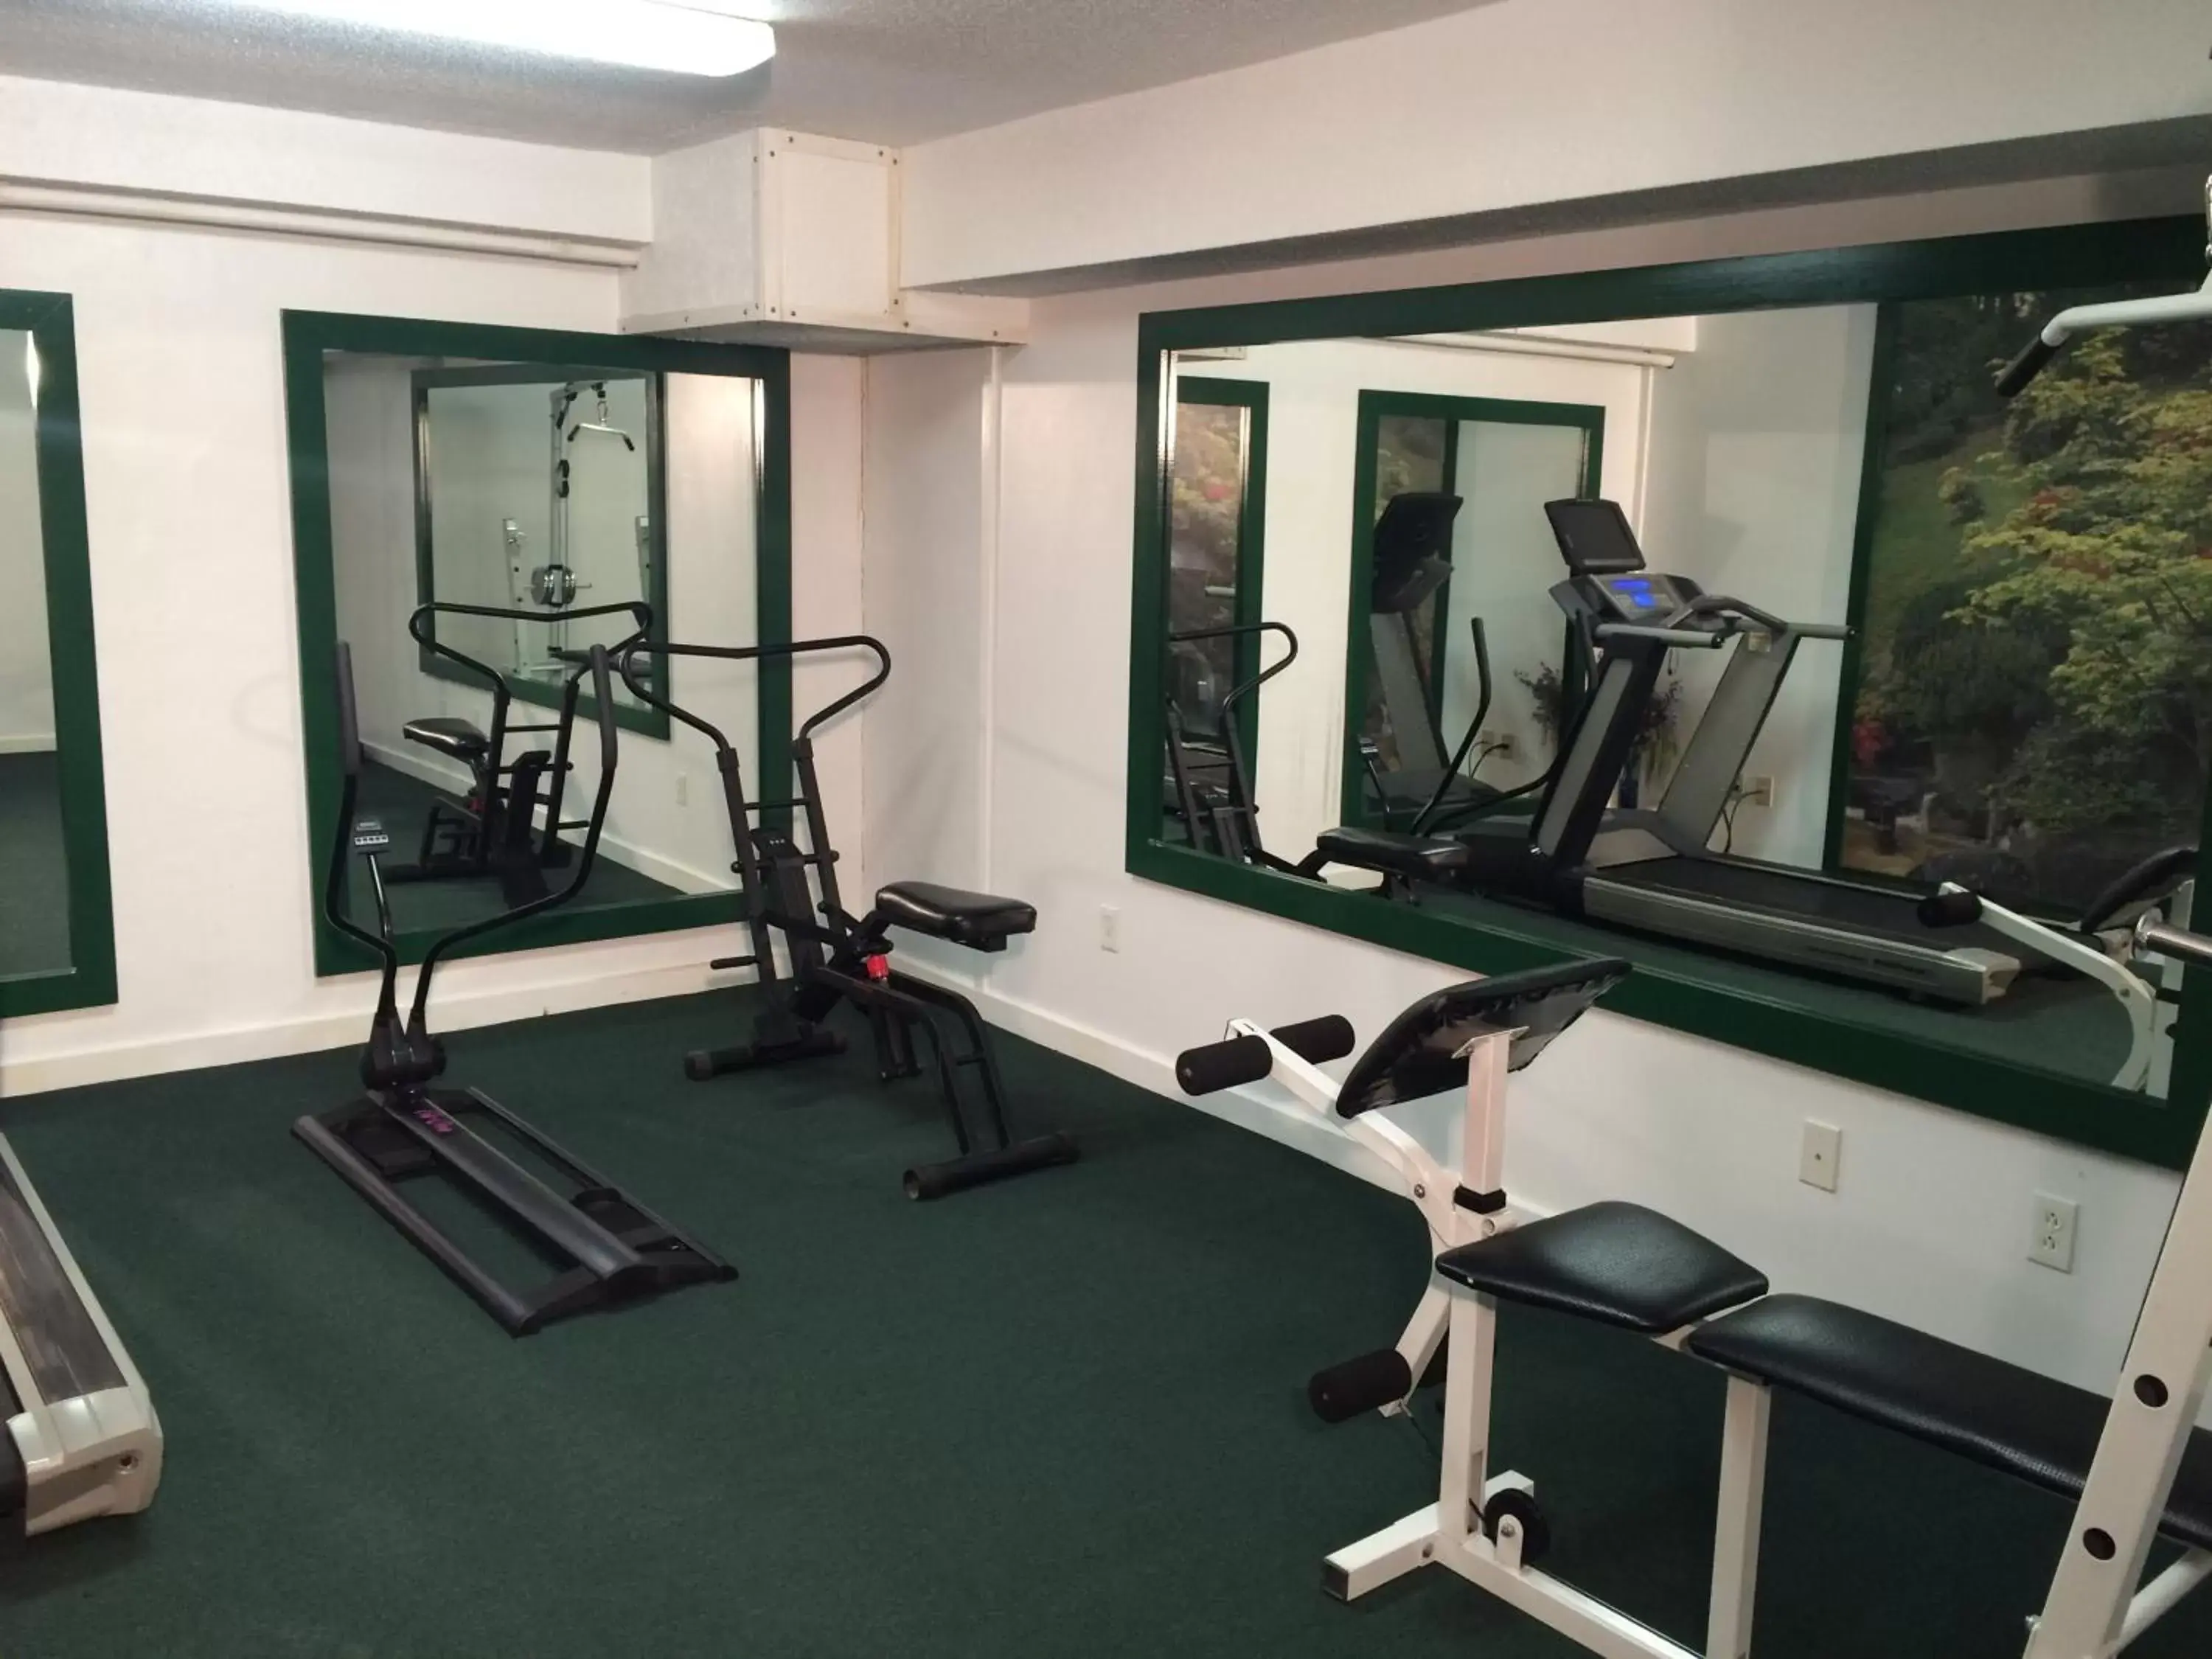 Fitness centre/facilities, Fitness Center/Facilities in Merrill Farm Inn